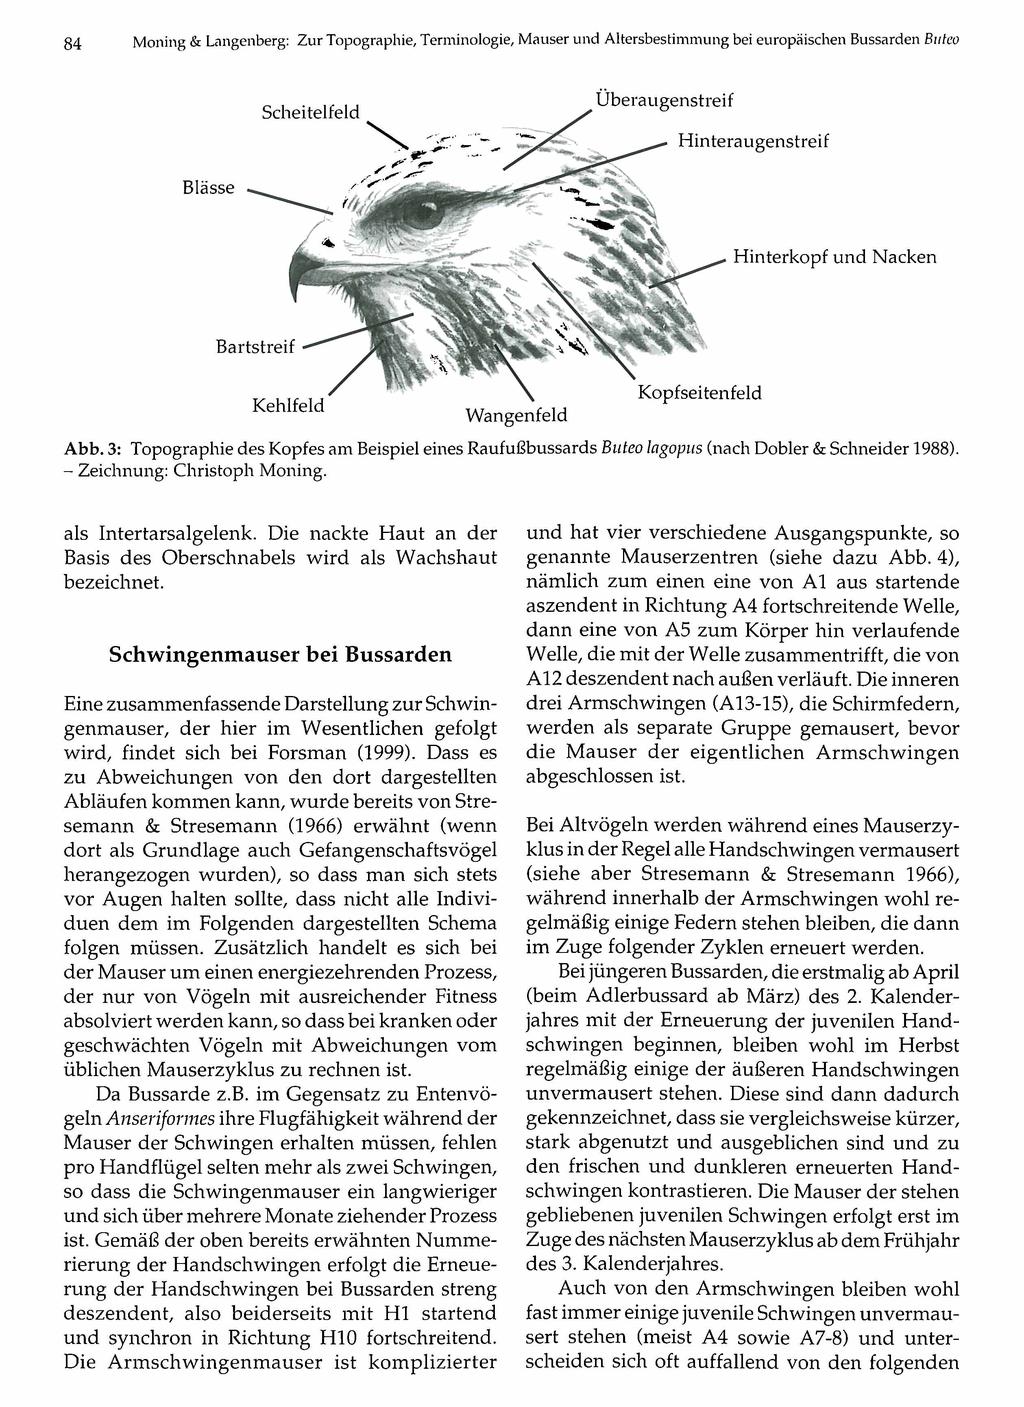 84 Ornithologische Gesellschaft Bayern, download Moning & Langenberg: Zur Topographie, Terminologie, M auserunter und www.biologiezentrum.